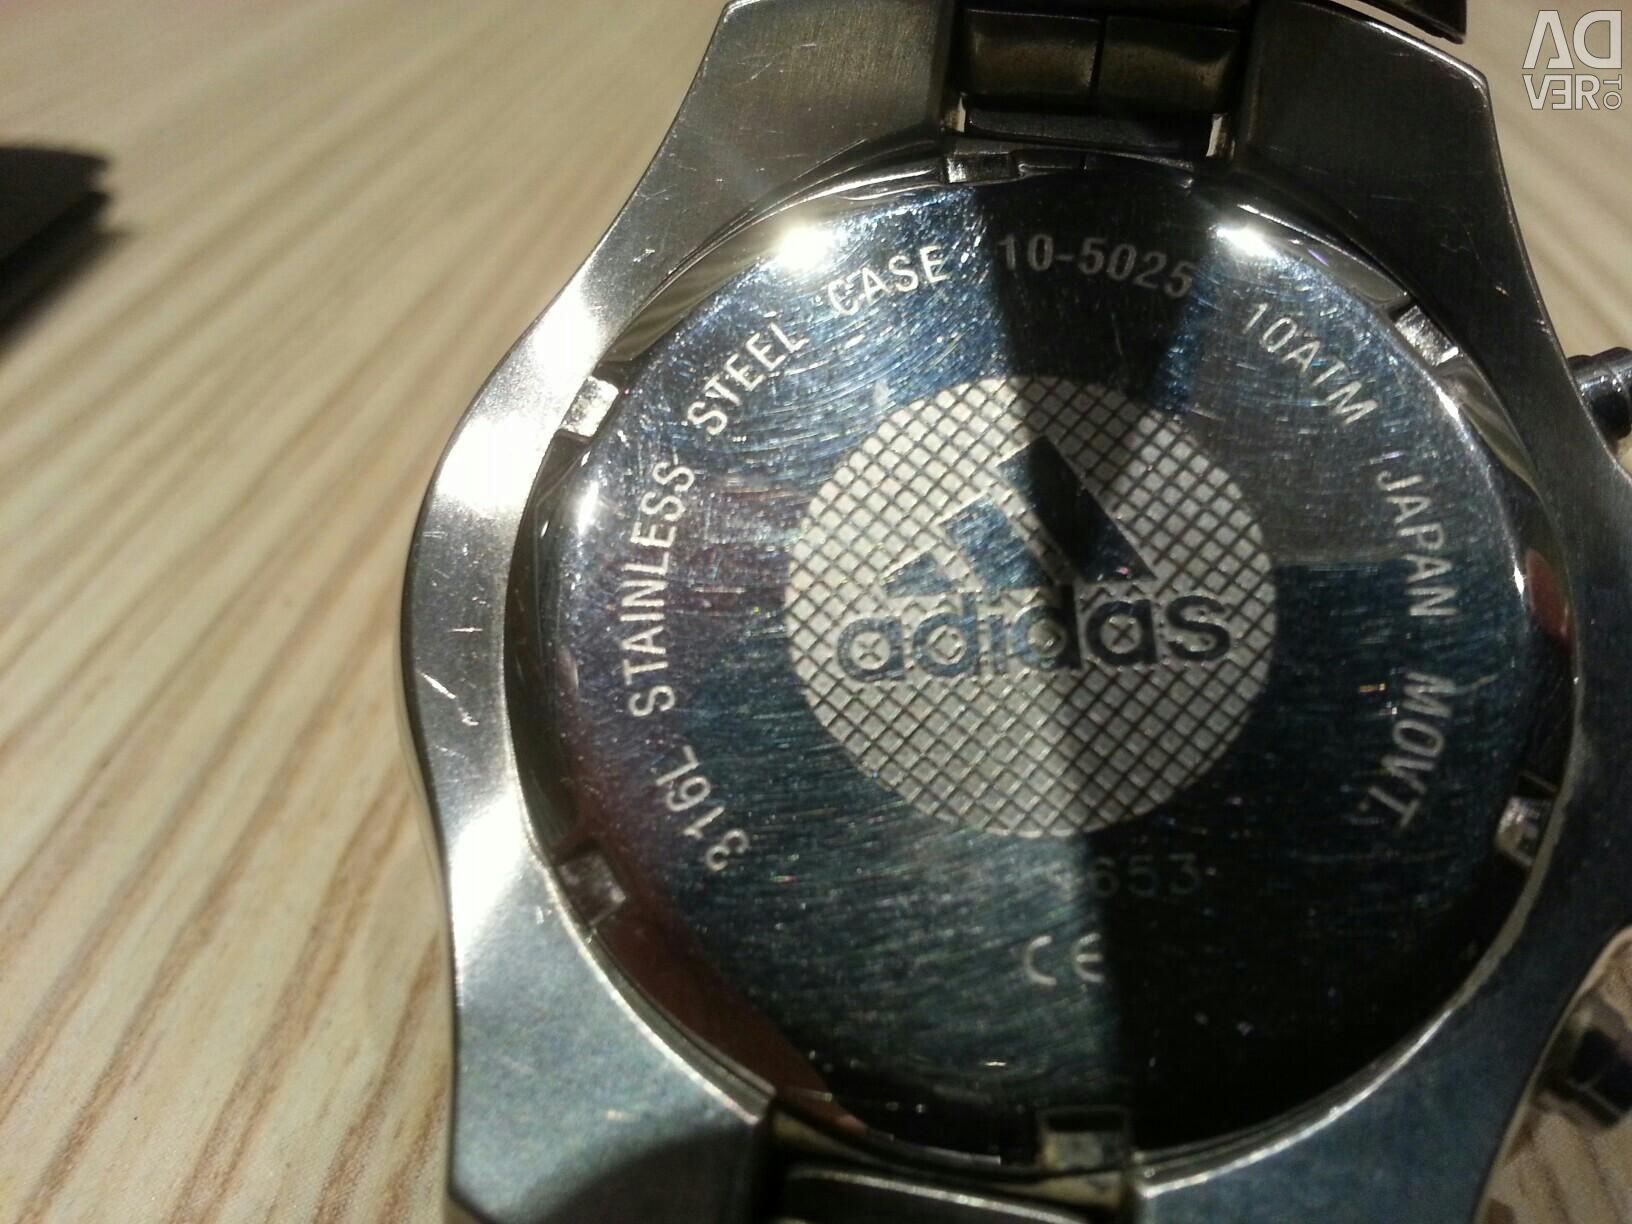 adidas 316l watch